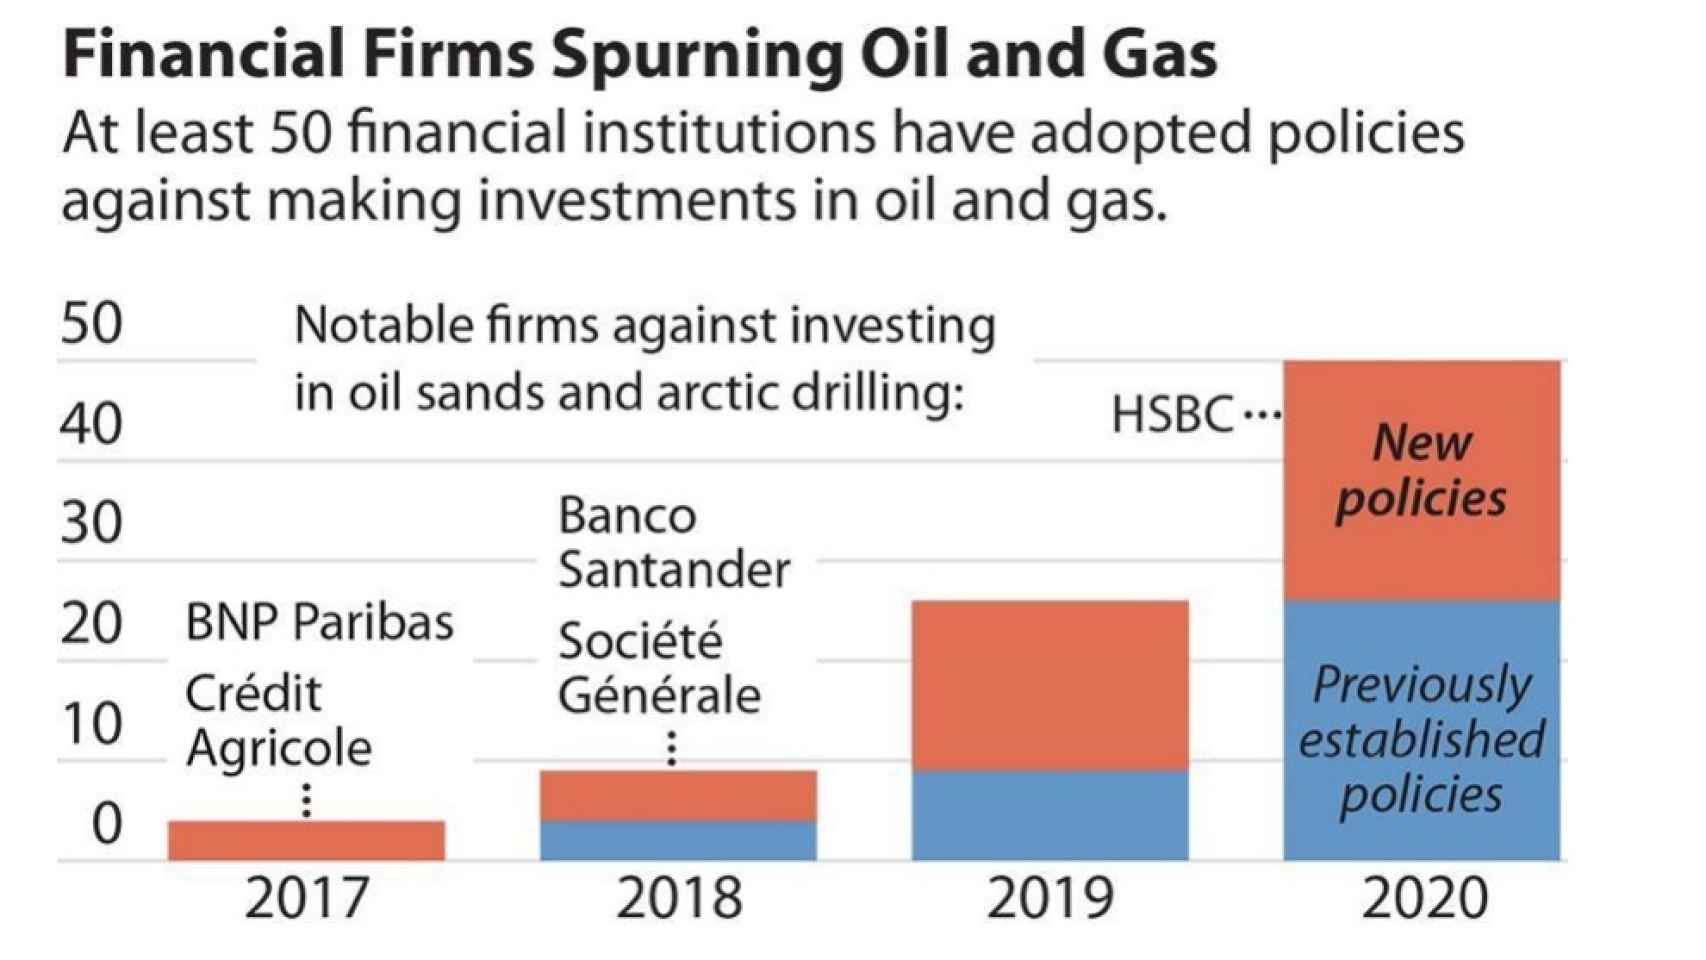 comparativa de financiación en Oil&Gas por entidades financieras